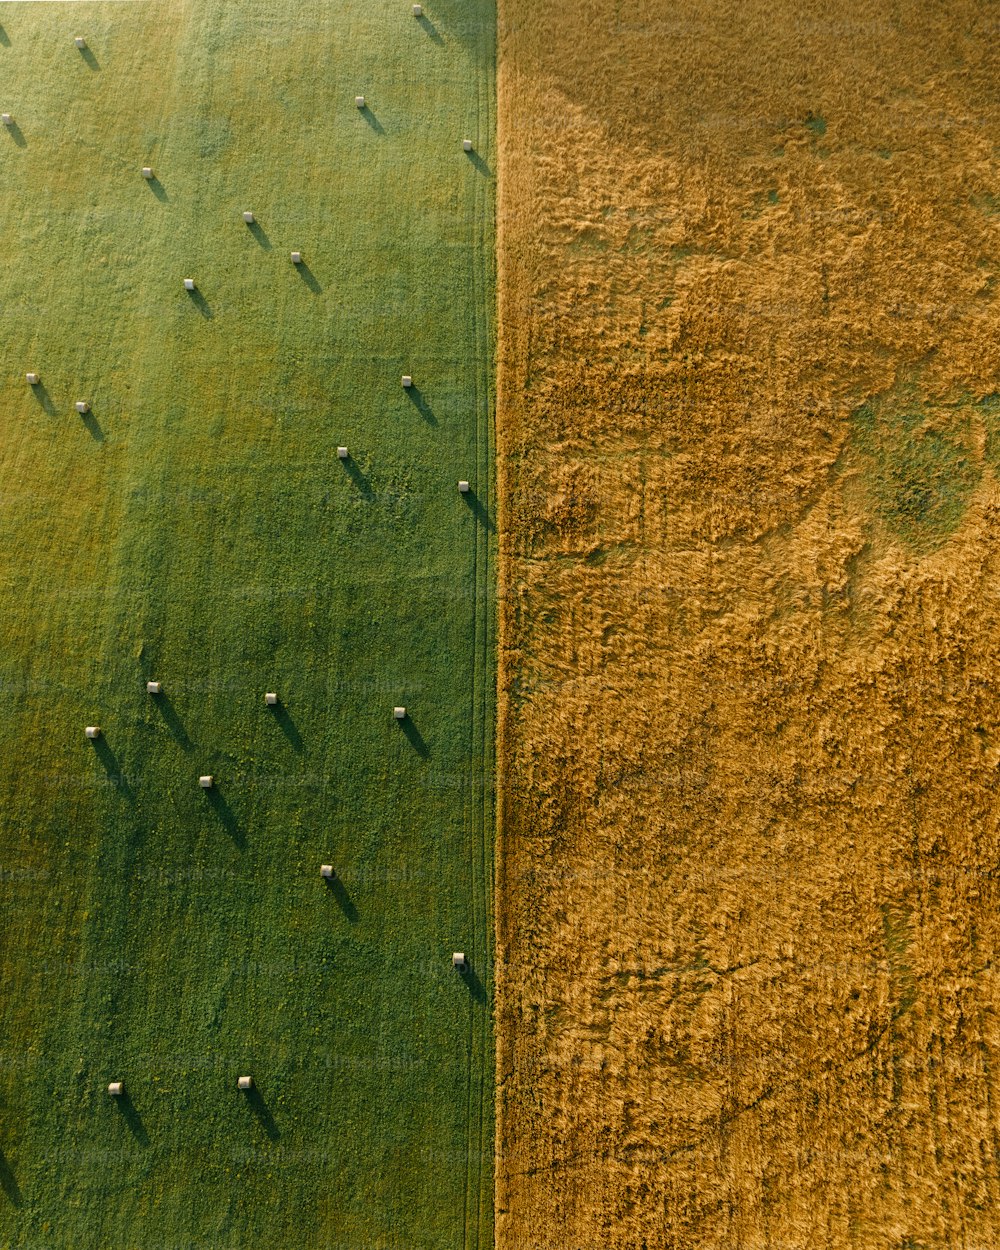 eine Luftaufnahme eines grünen Feldes und eines gelben Feldes